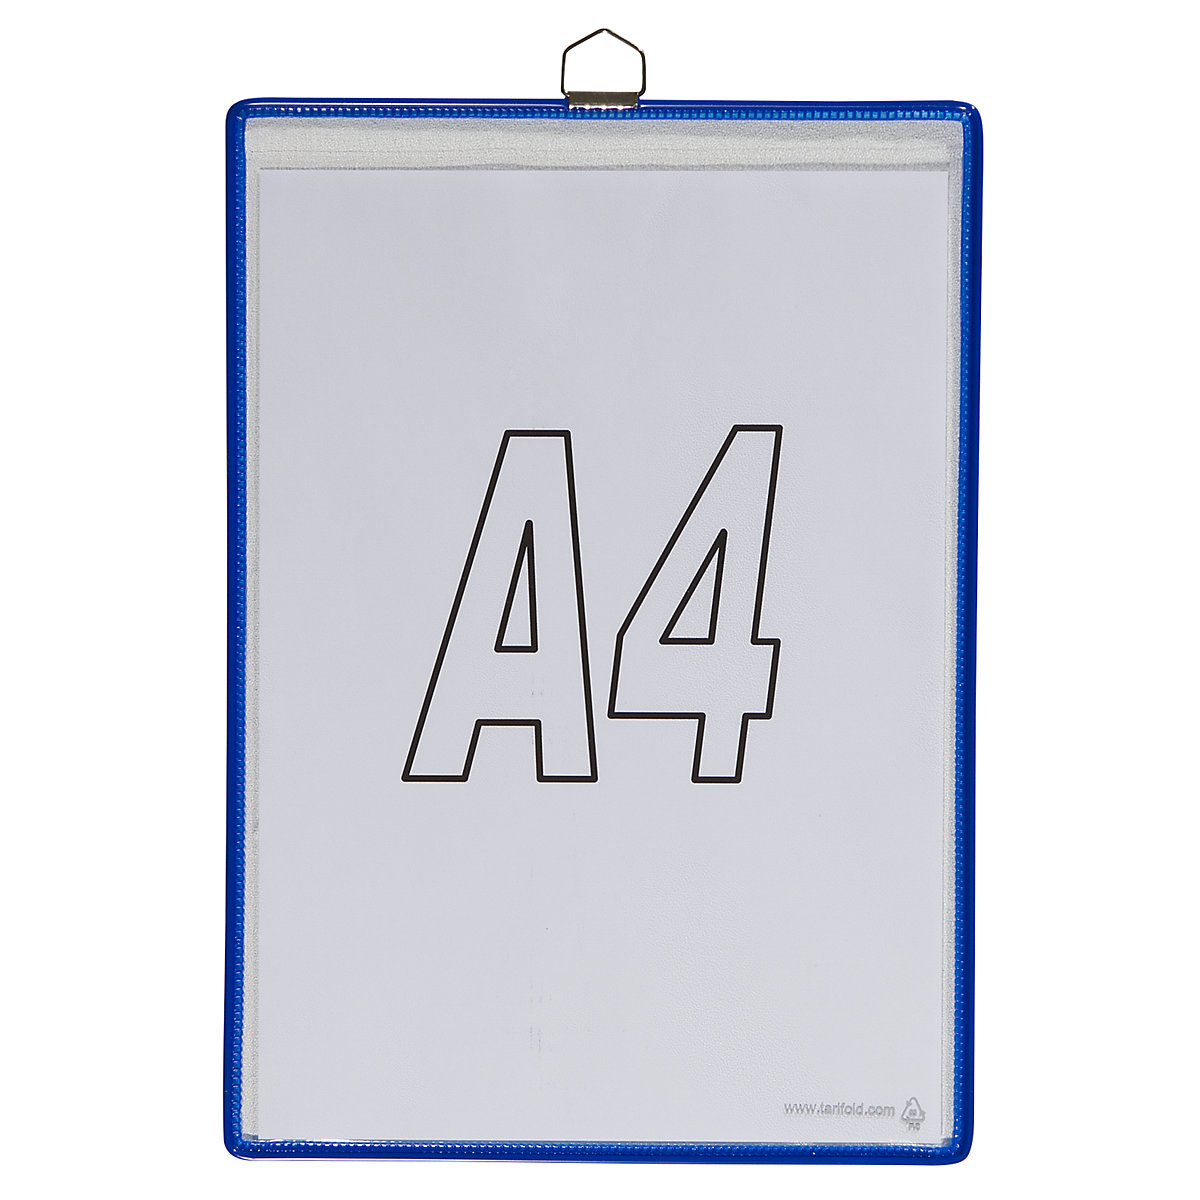 Bolsa transparente colgante – Tarifold, para formato DIN A4, azul, UE 10 unidades-5